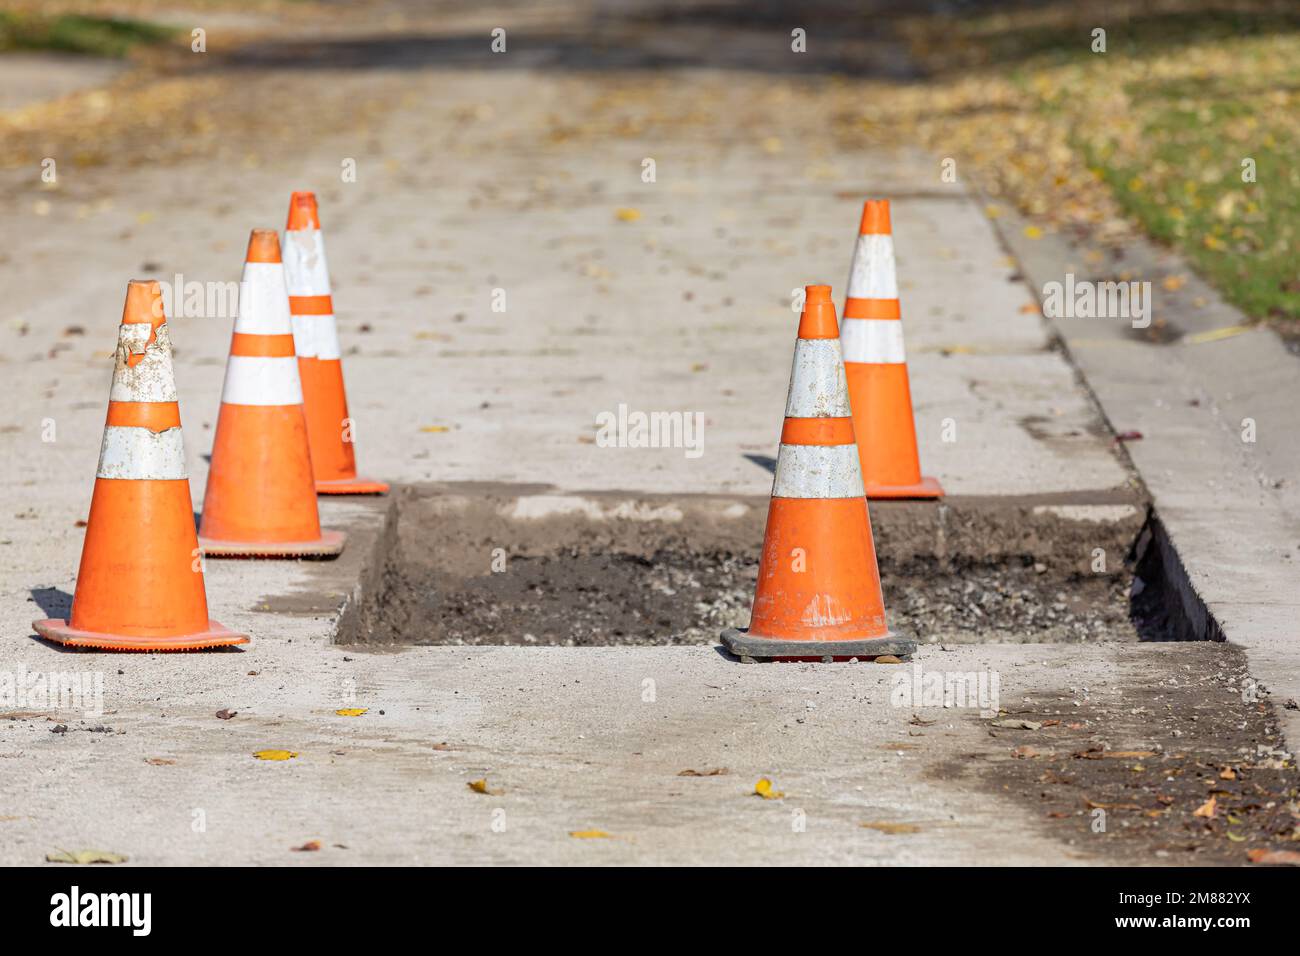 Straßenreparatur in der Stadt mit orangefarbenen Verkehrskegeln. Konzept für Straßenbau, Instandhaltung und Infrastrukturfinanzierung. Stockfoto